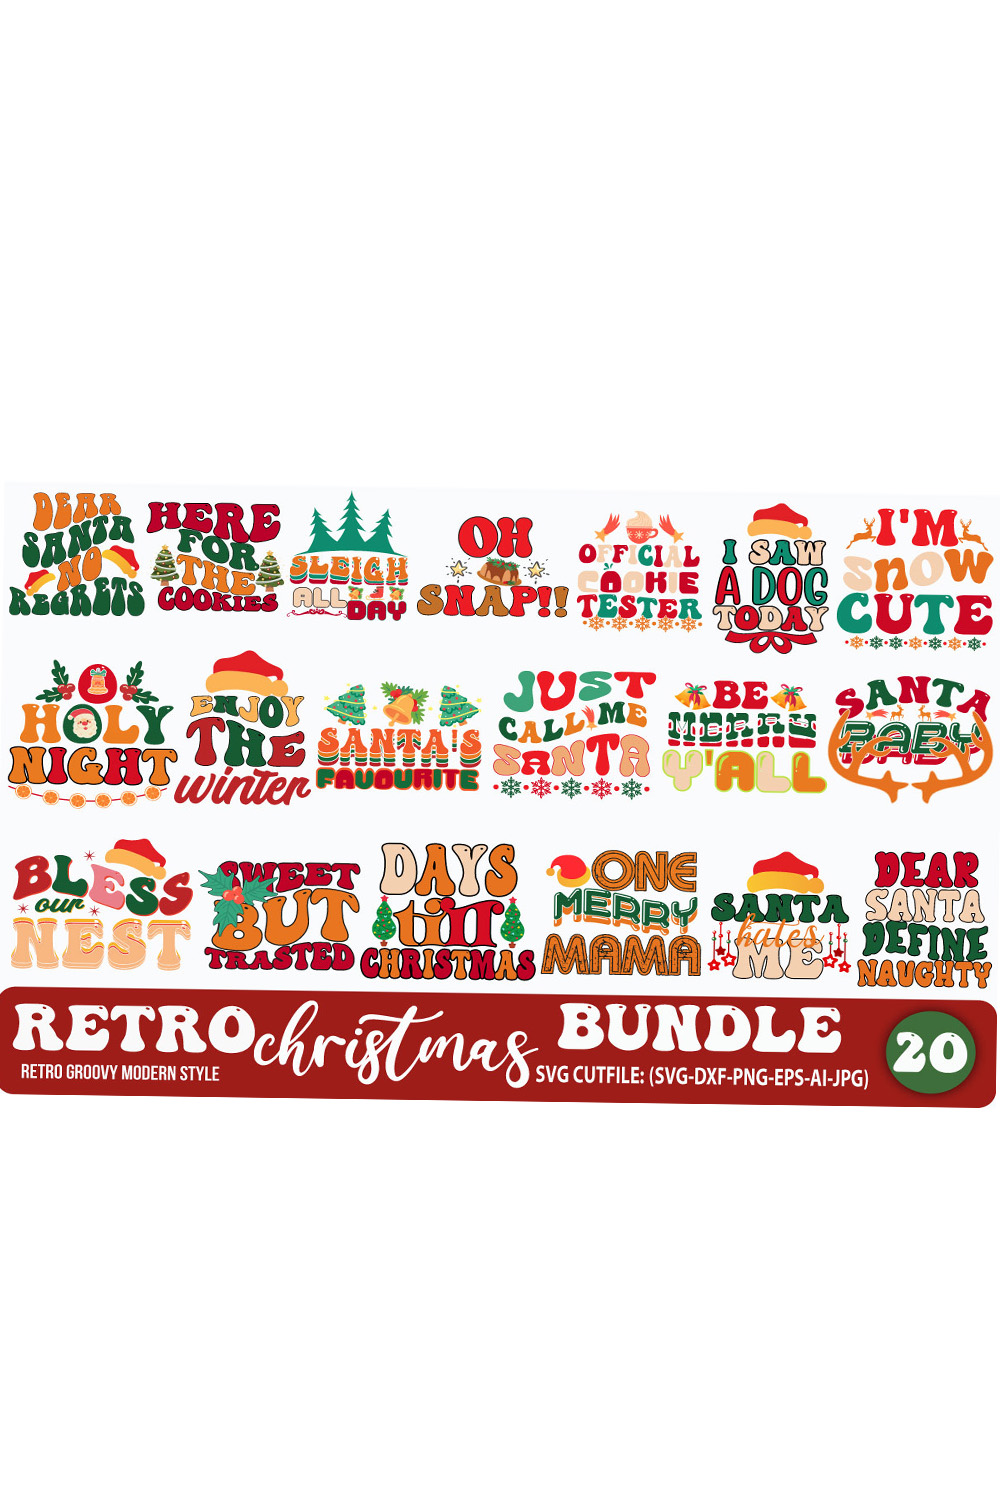 Christmas Vintage SVG Design Bundle pinterest image.